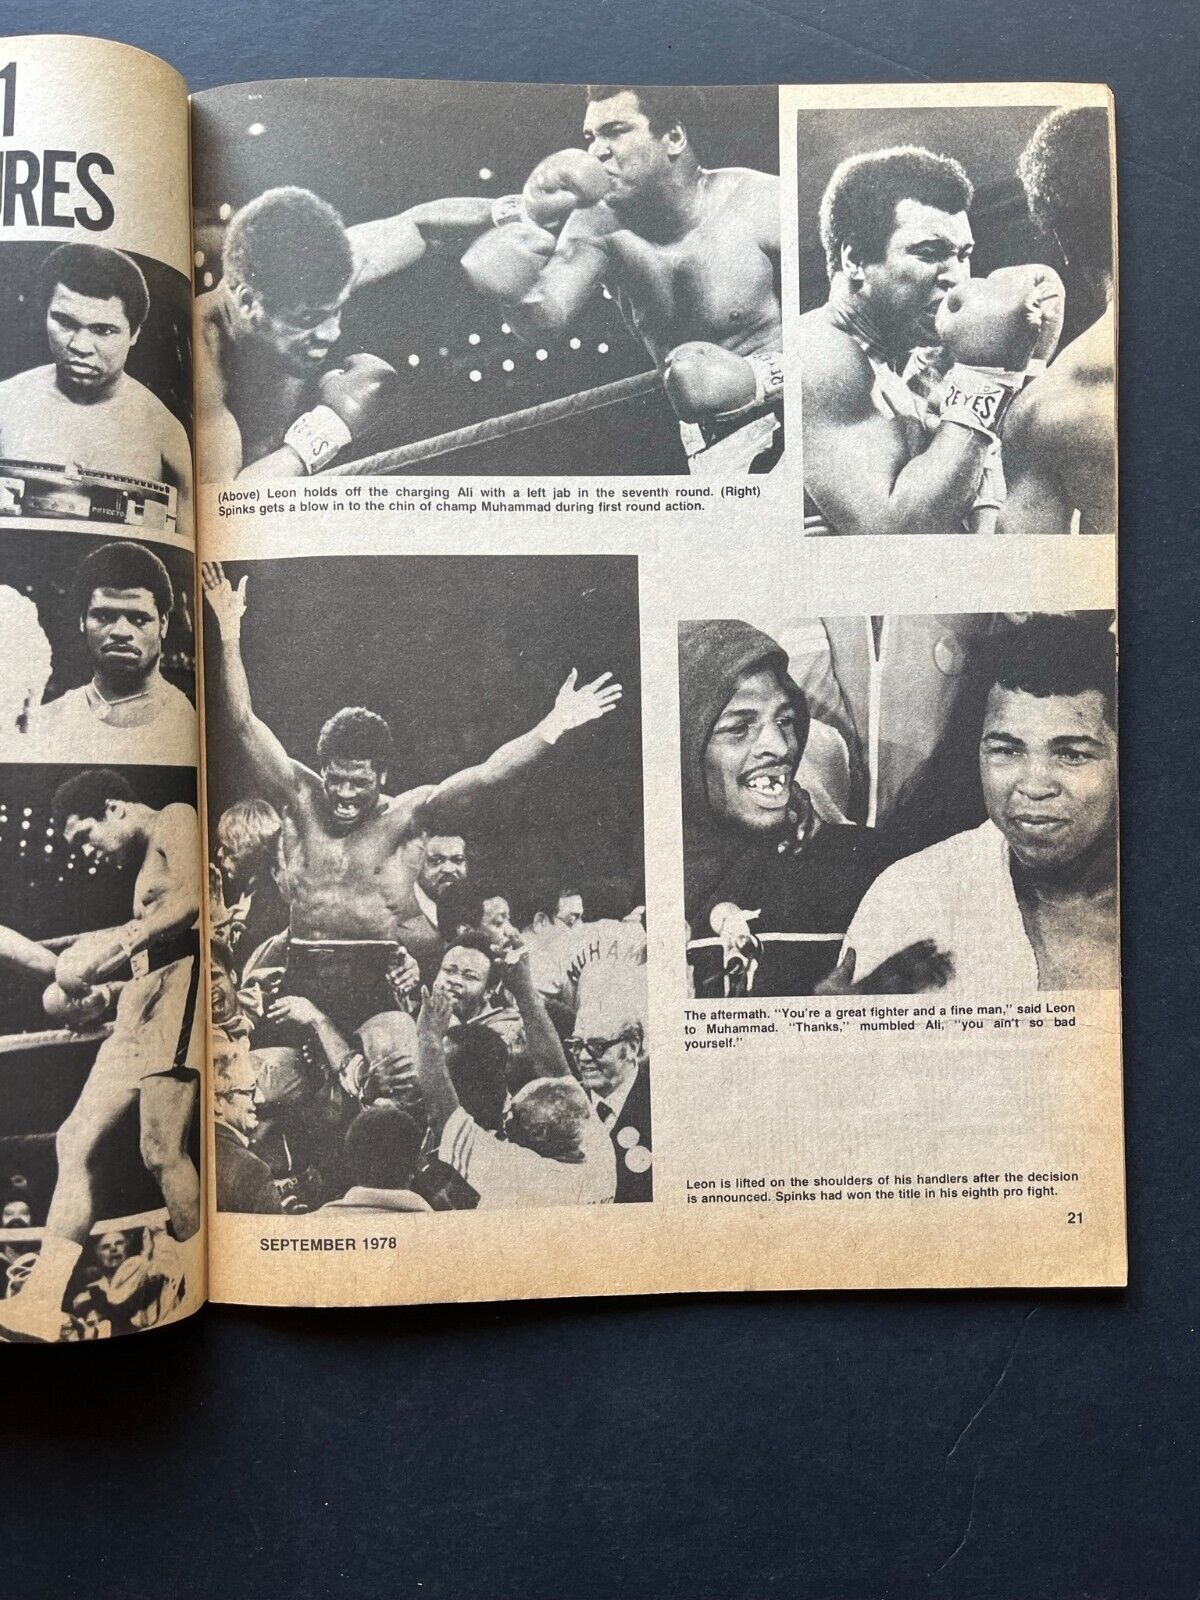 September 1978 "The Ring" Magazine – Ali-Spinks Souvenir Issue